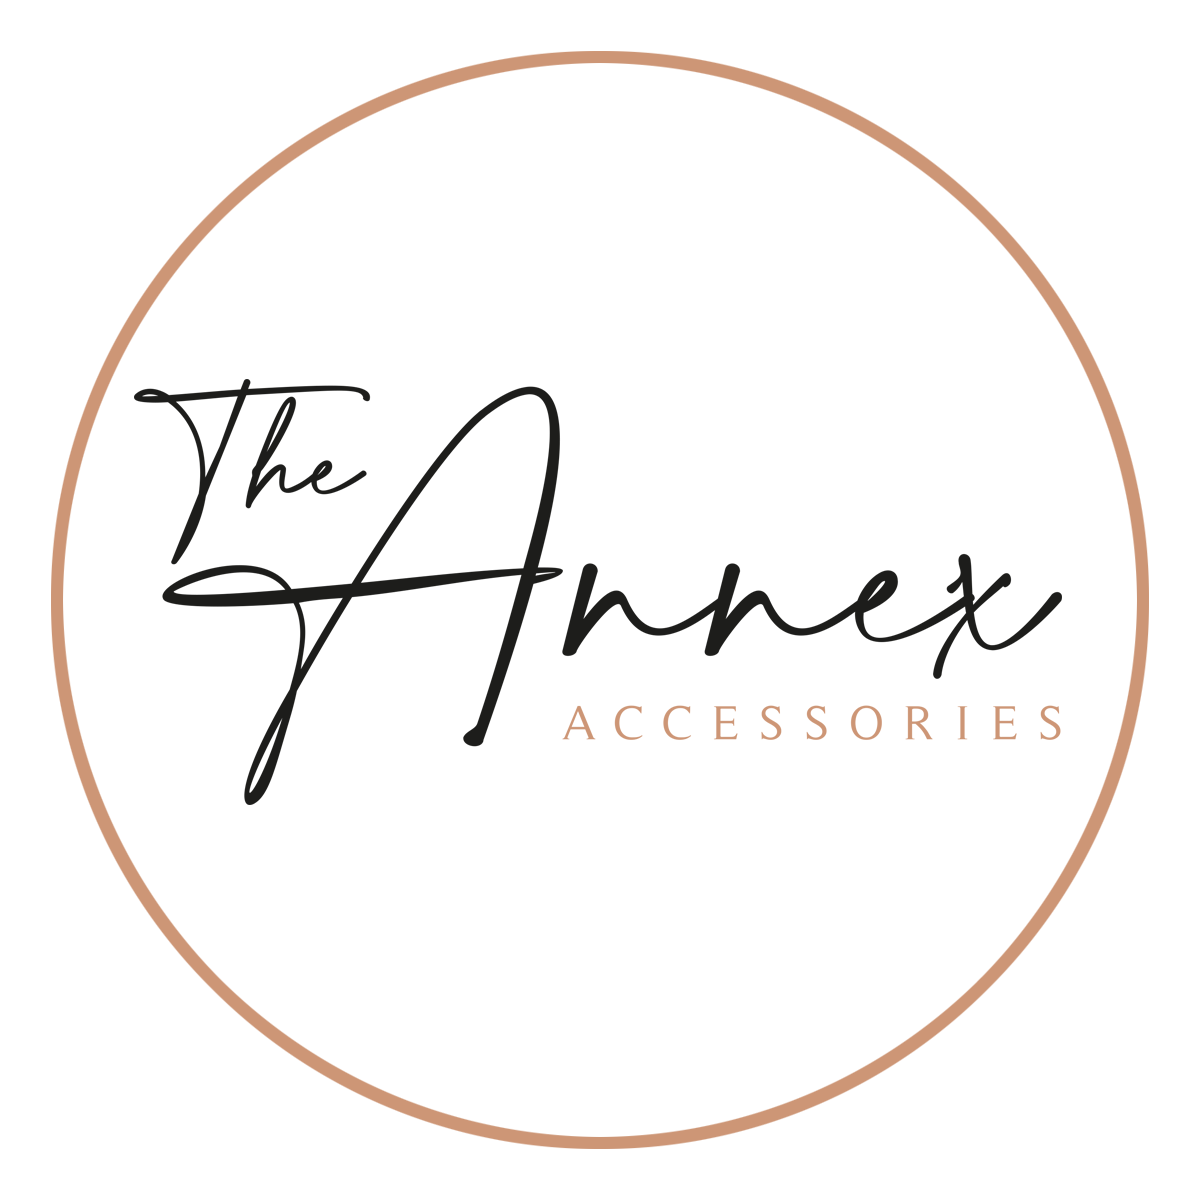 The Annex Accessories